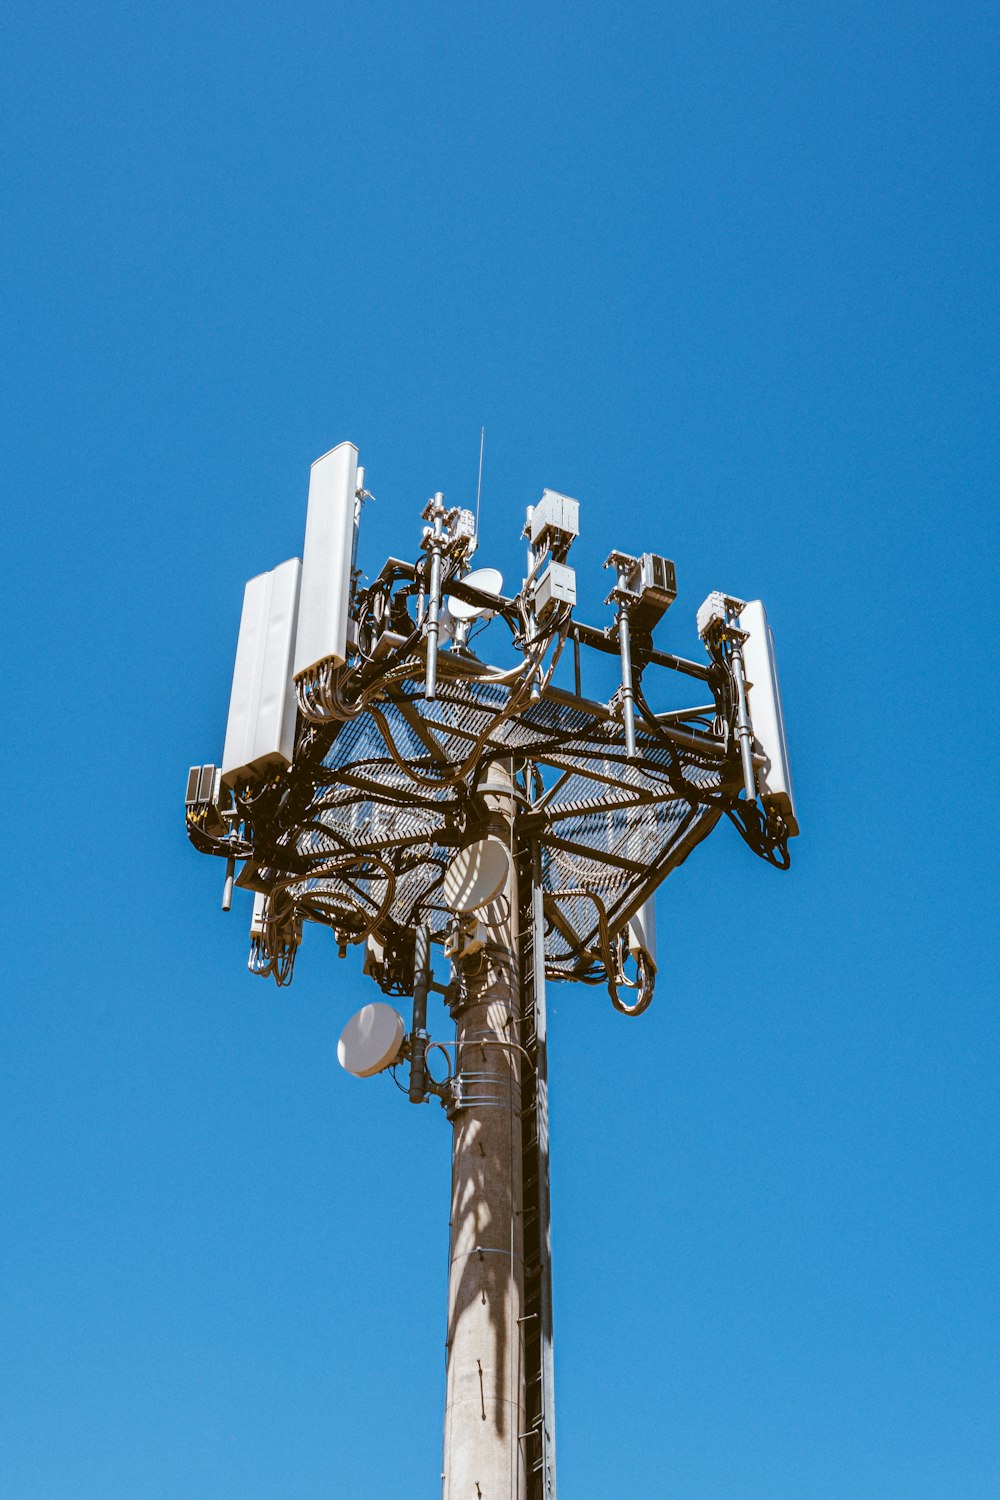 A telecom tower against a blue sky.